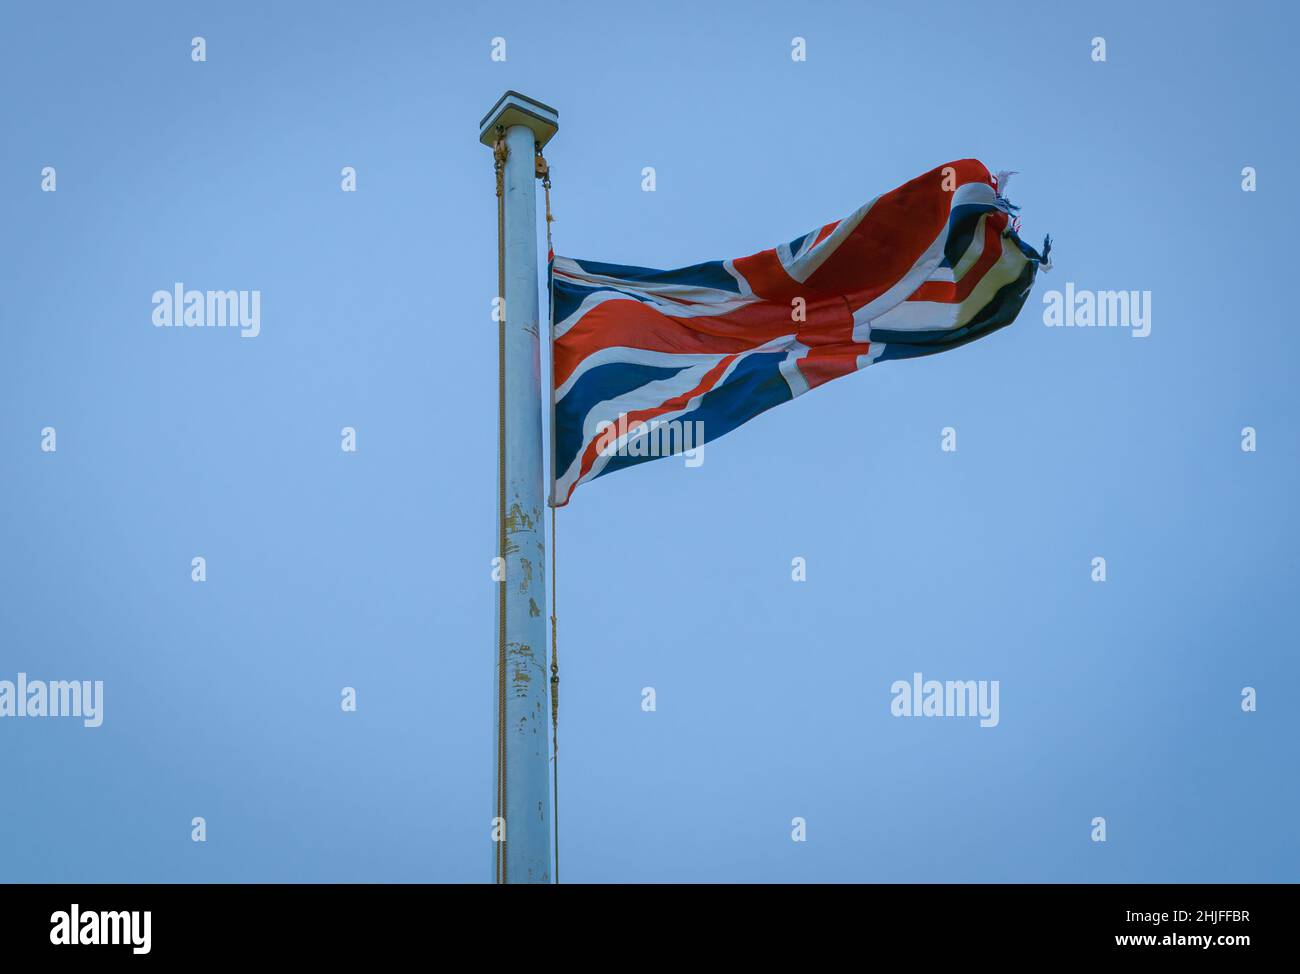 drapeau britannique flatté volant haut dans le ciel bleu Banque D'Images